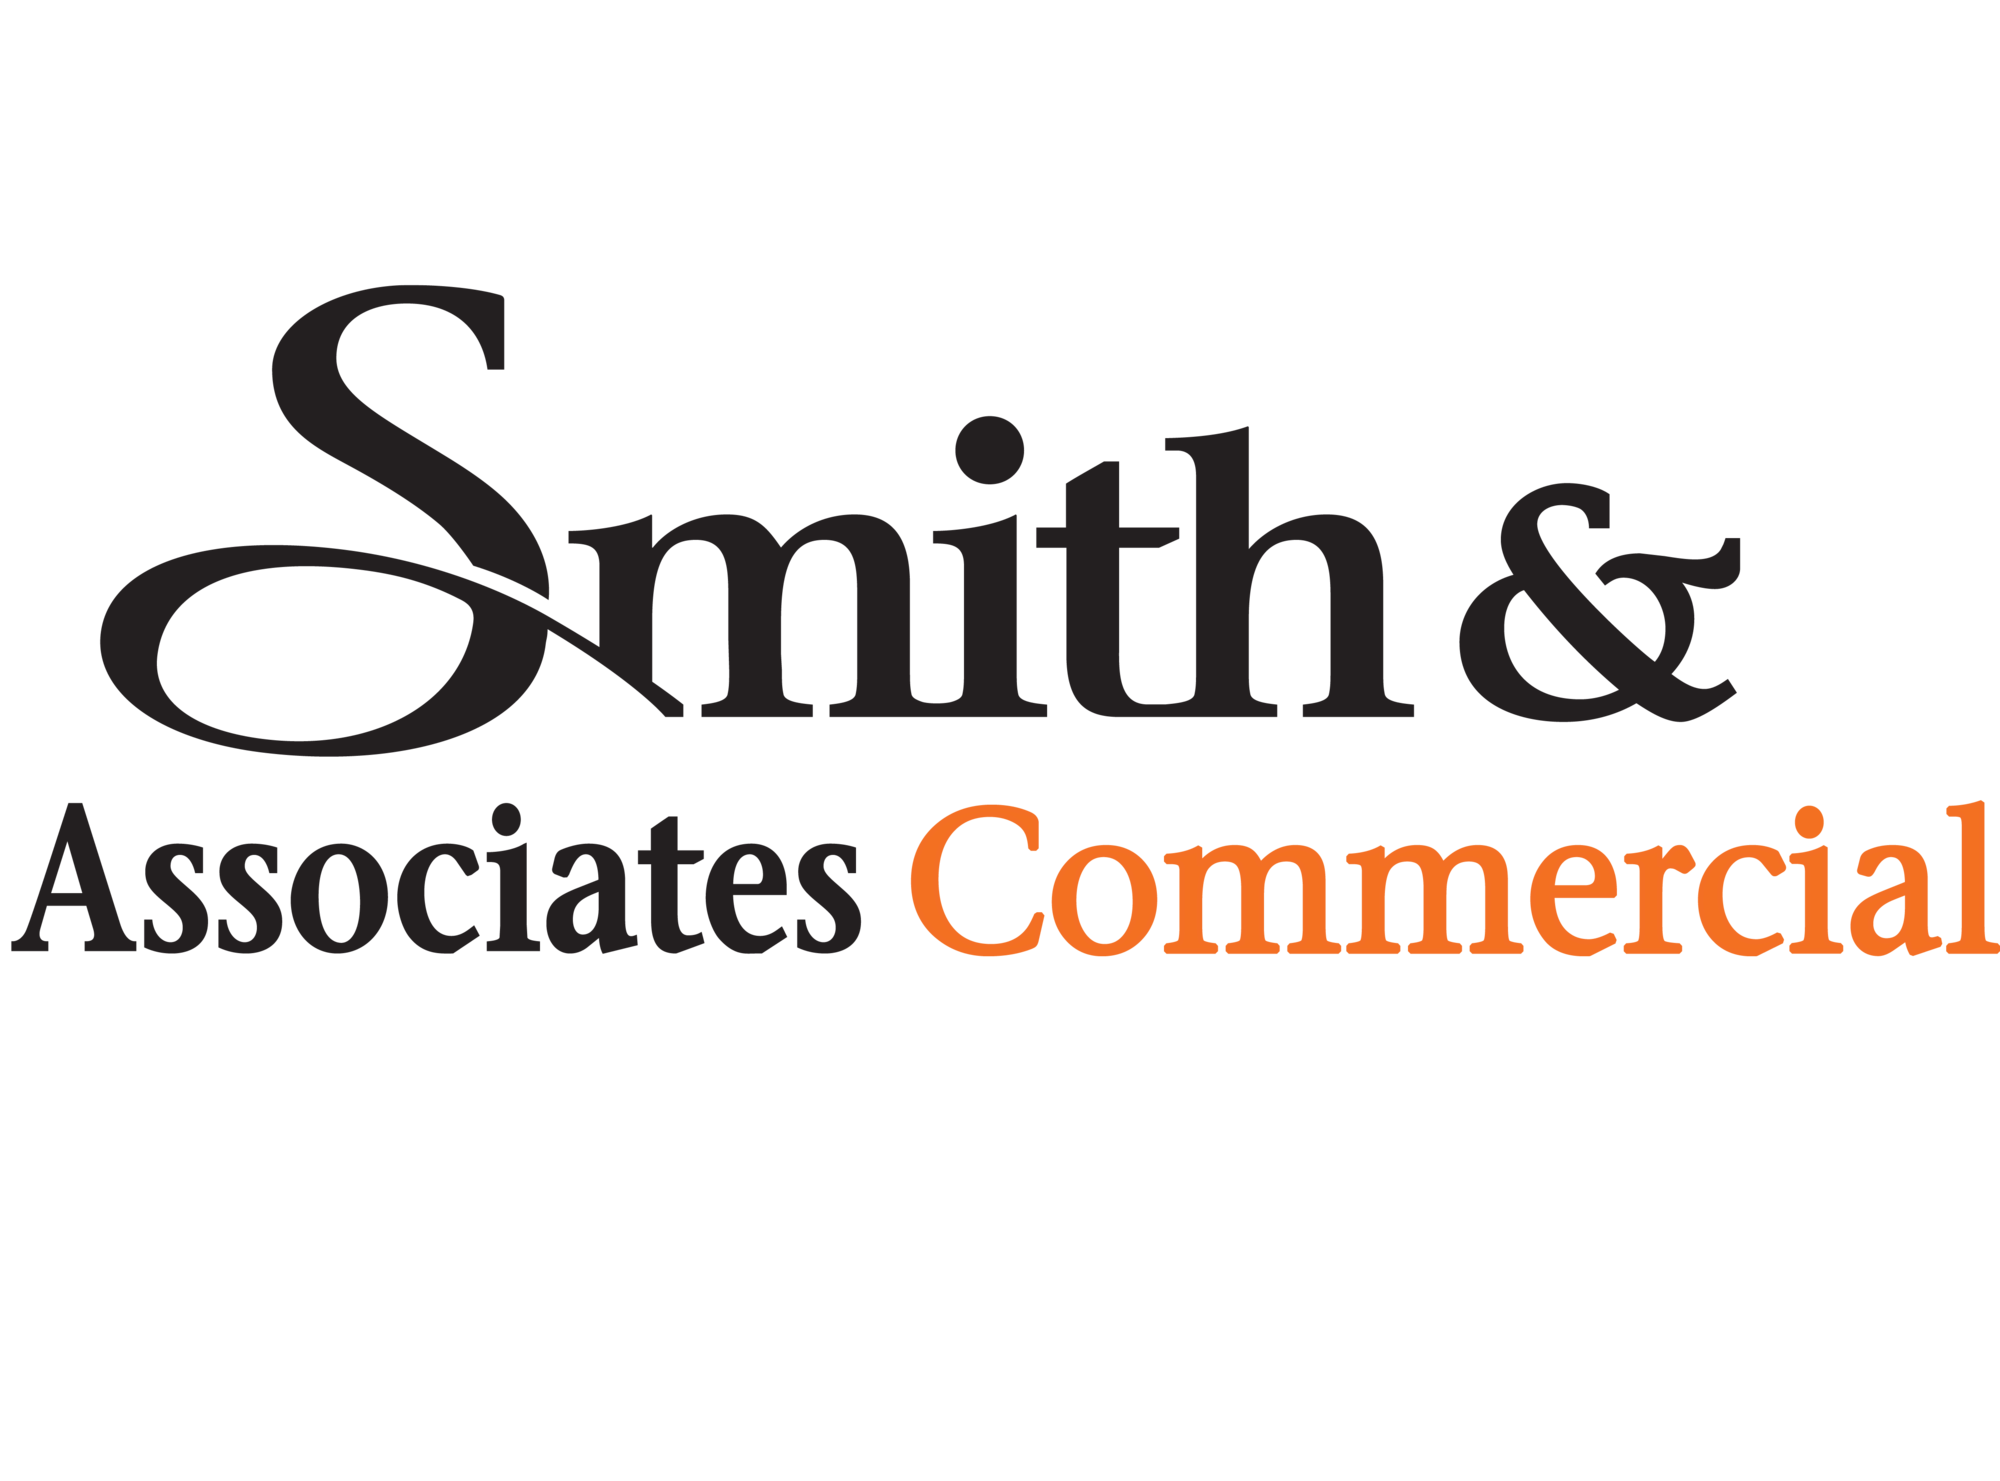 Smith & Associates Commercial logo